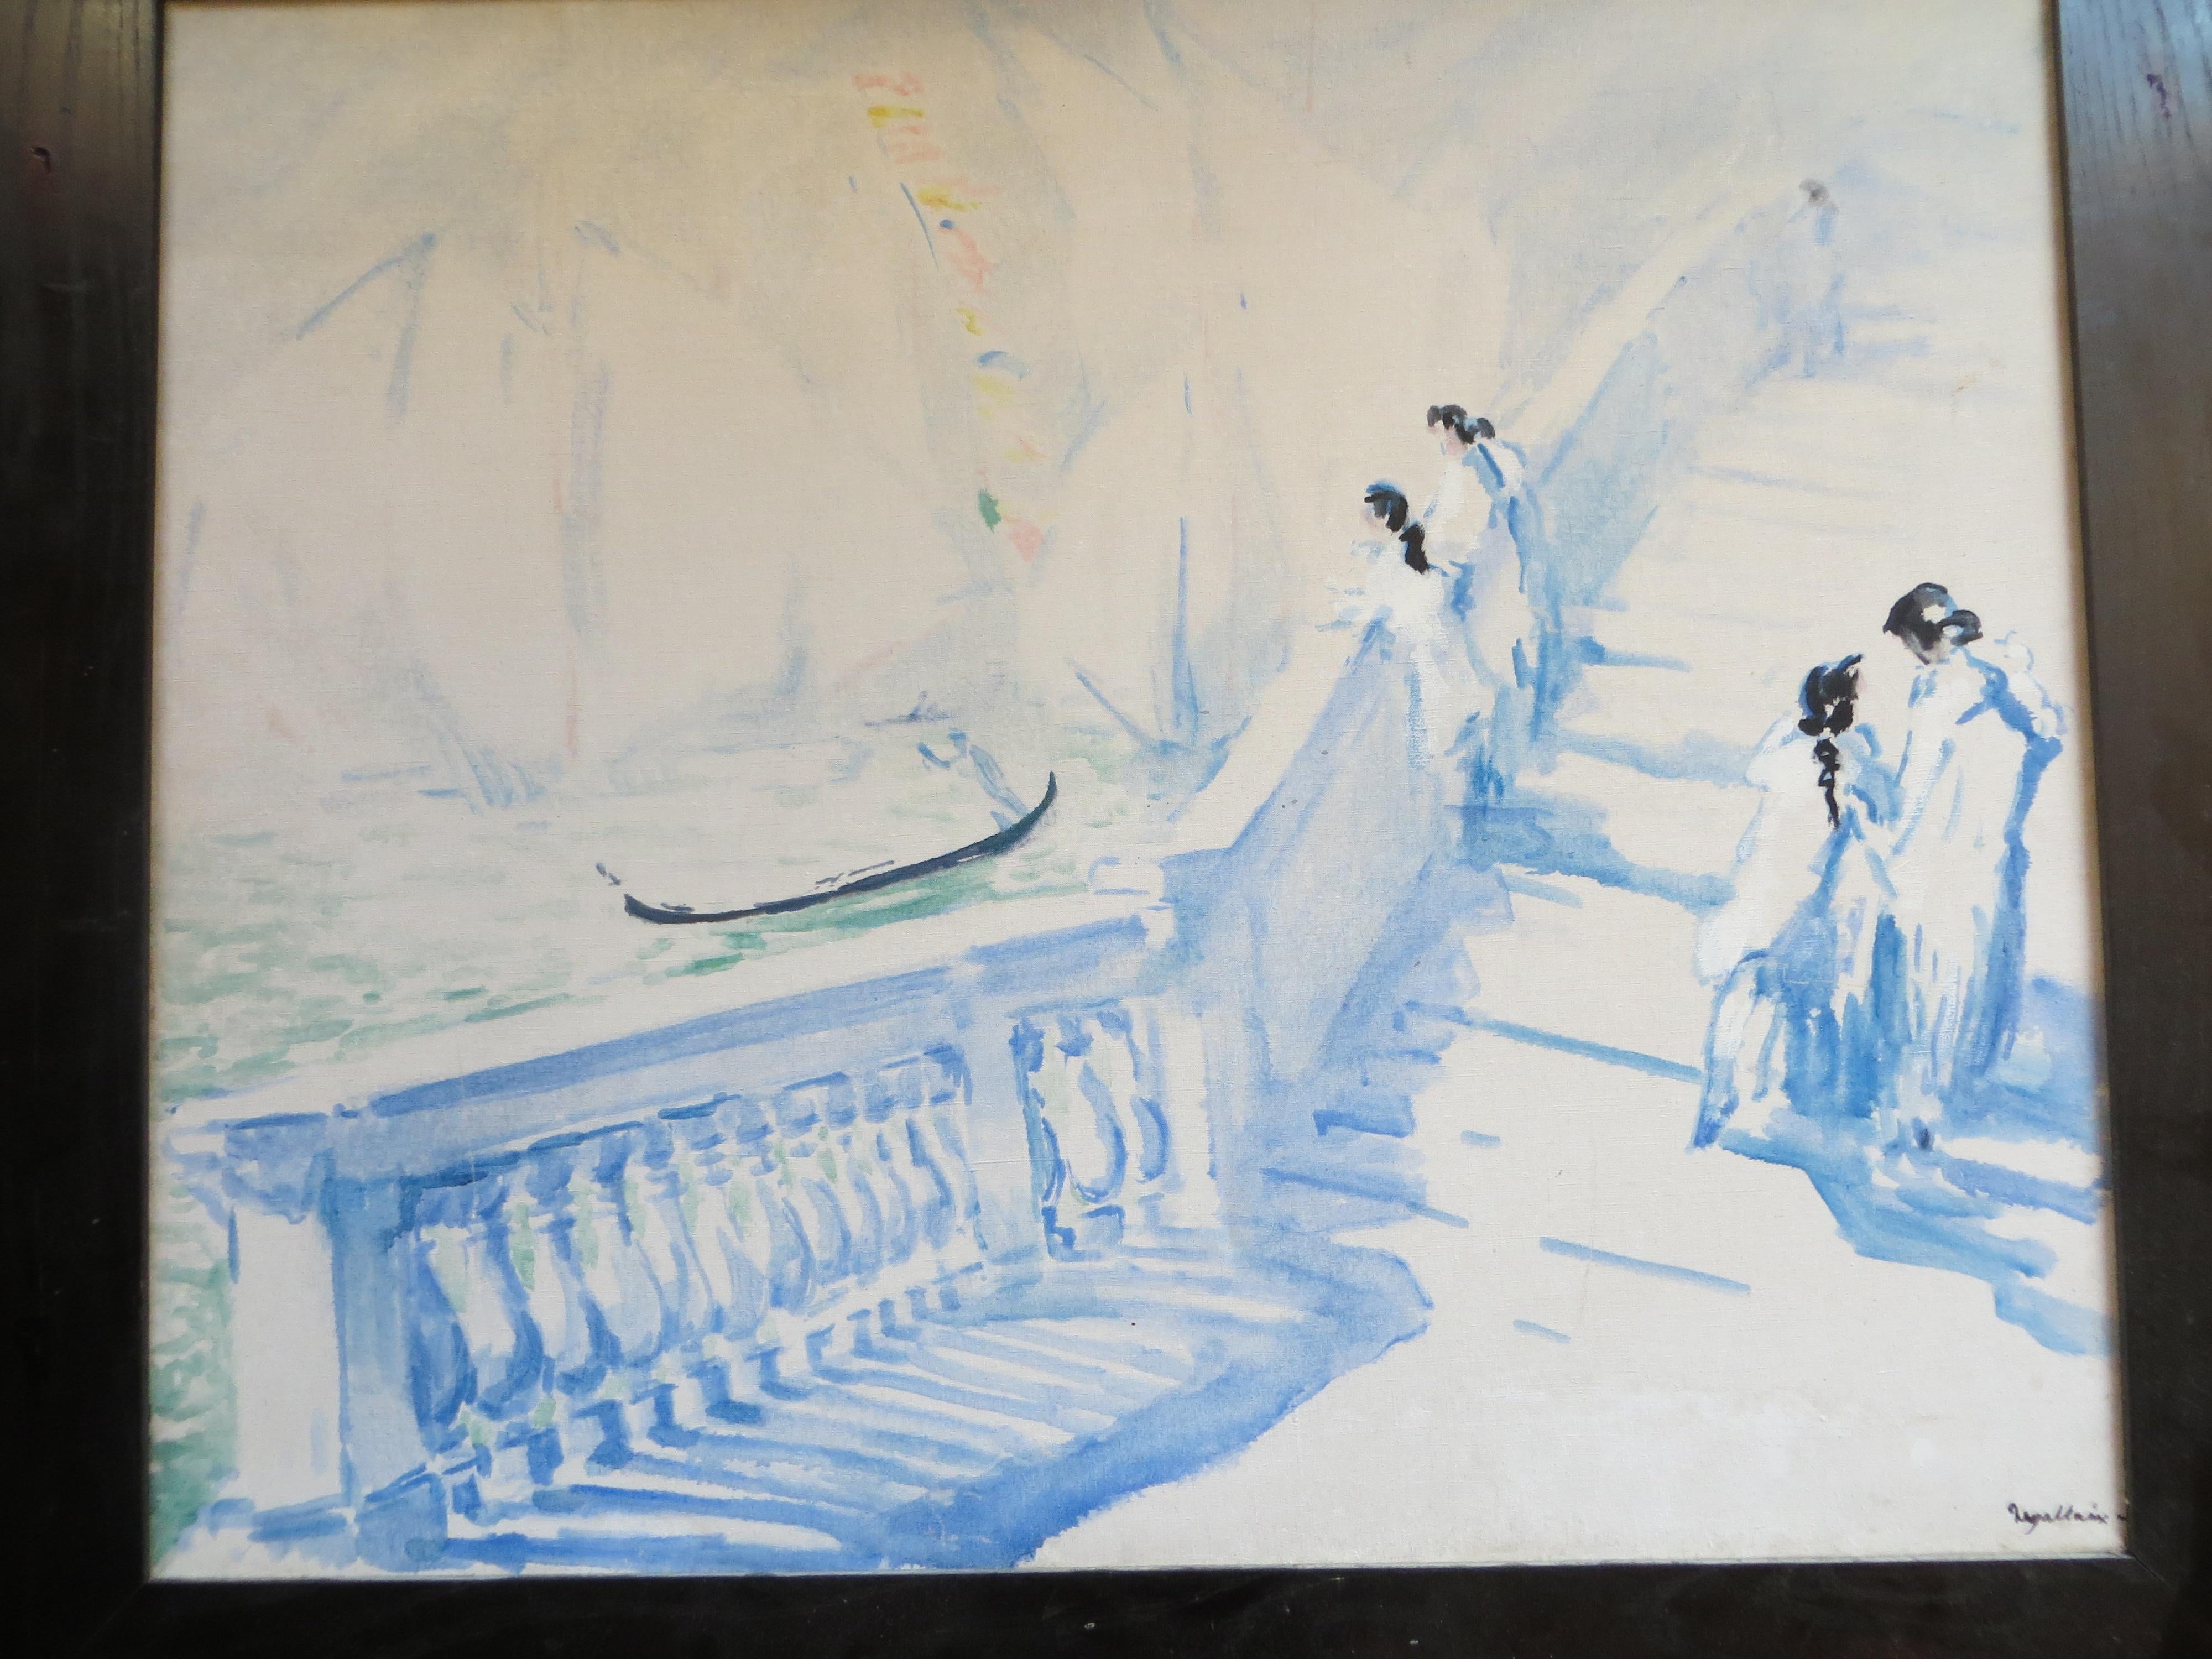 Öl auf Leinwand mit der Darstellung einer Brücke in Venedig. Das Gemälde ist signiert Degallaix  aus dem Jahr 1926.
Sehr sensibler Anschlag im Aquarellstil.
DEGALLAIX louis
Geboren in Saint-Quentin, XIX °. Französisch
Landschaftsmaler,